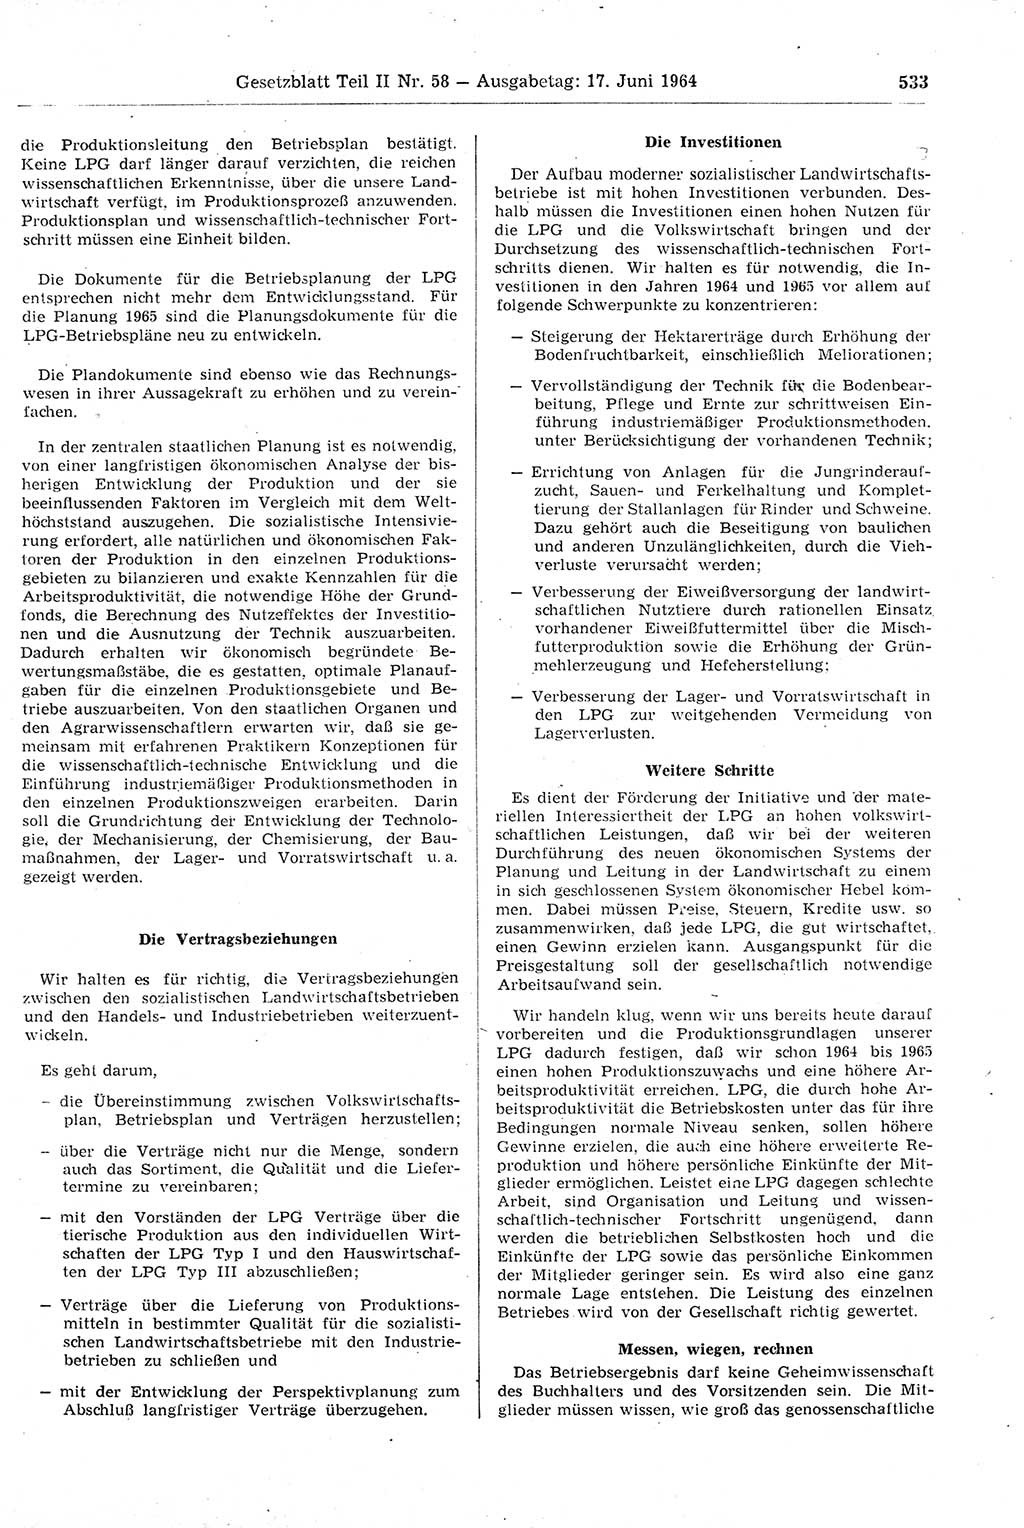 Gesetzblatt (GBl.) der Deutschen Demokratischen Republik (DDR) Teil ⅠⅠ 1964, Seite 533 (GBl. DDR ⅠⅠ 1964, S. 533)